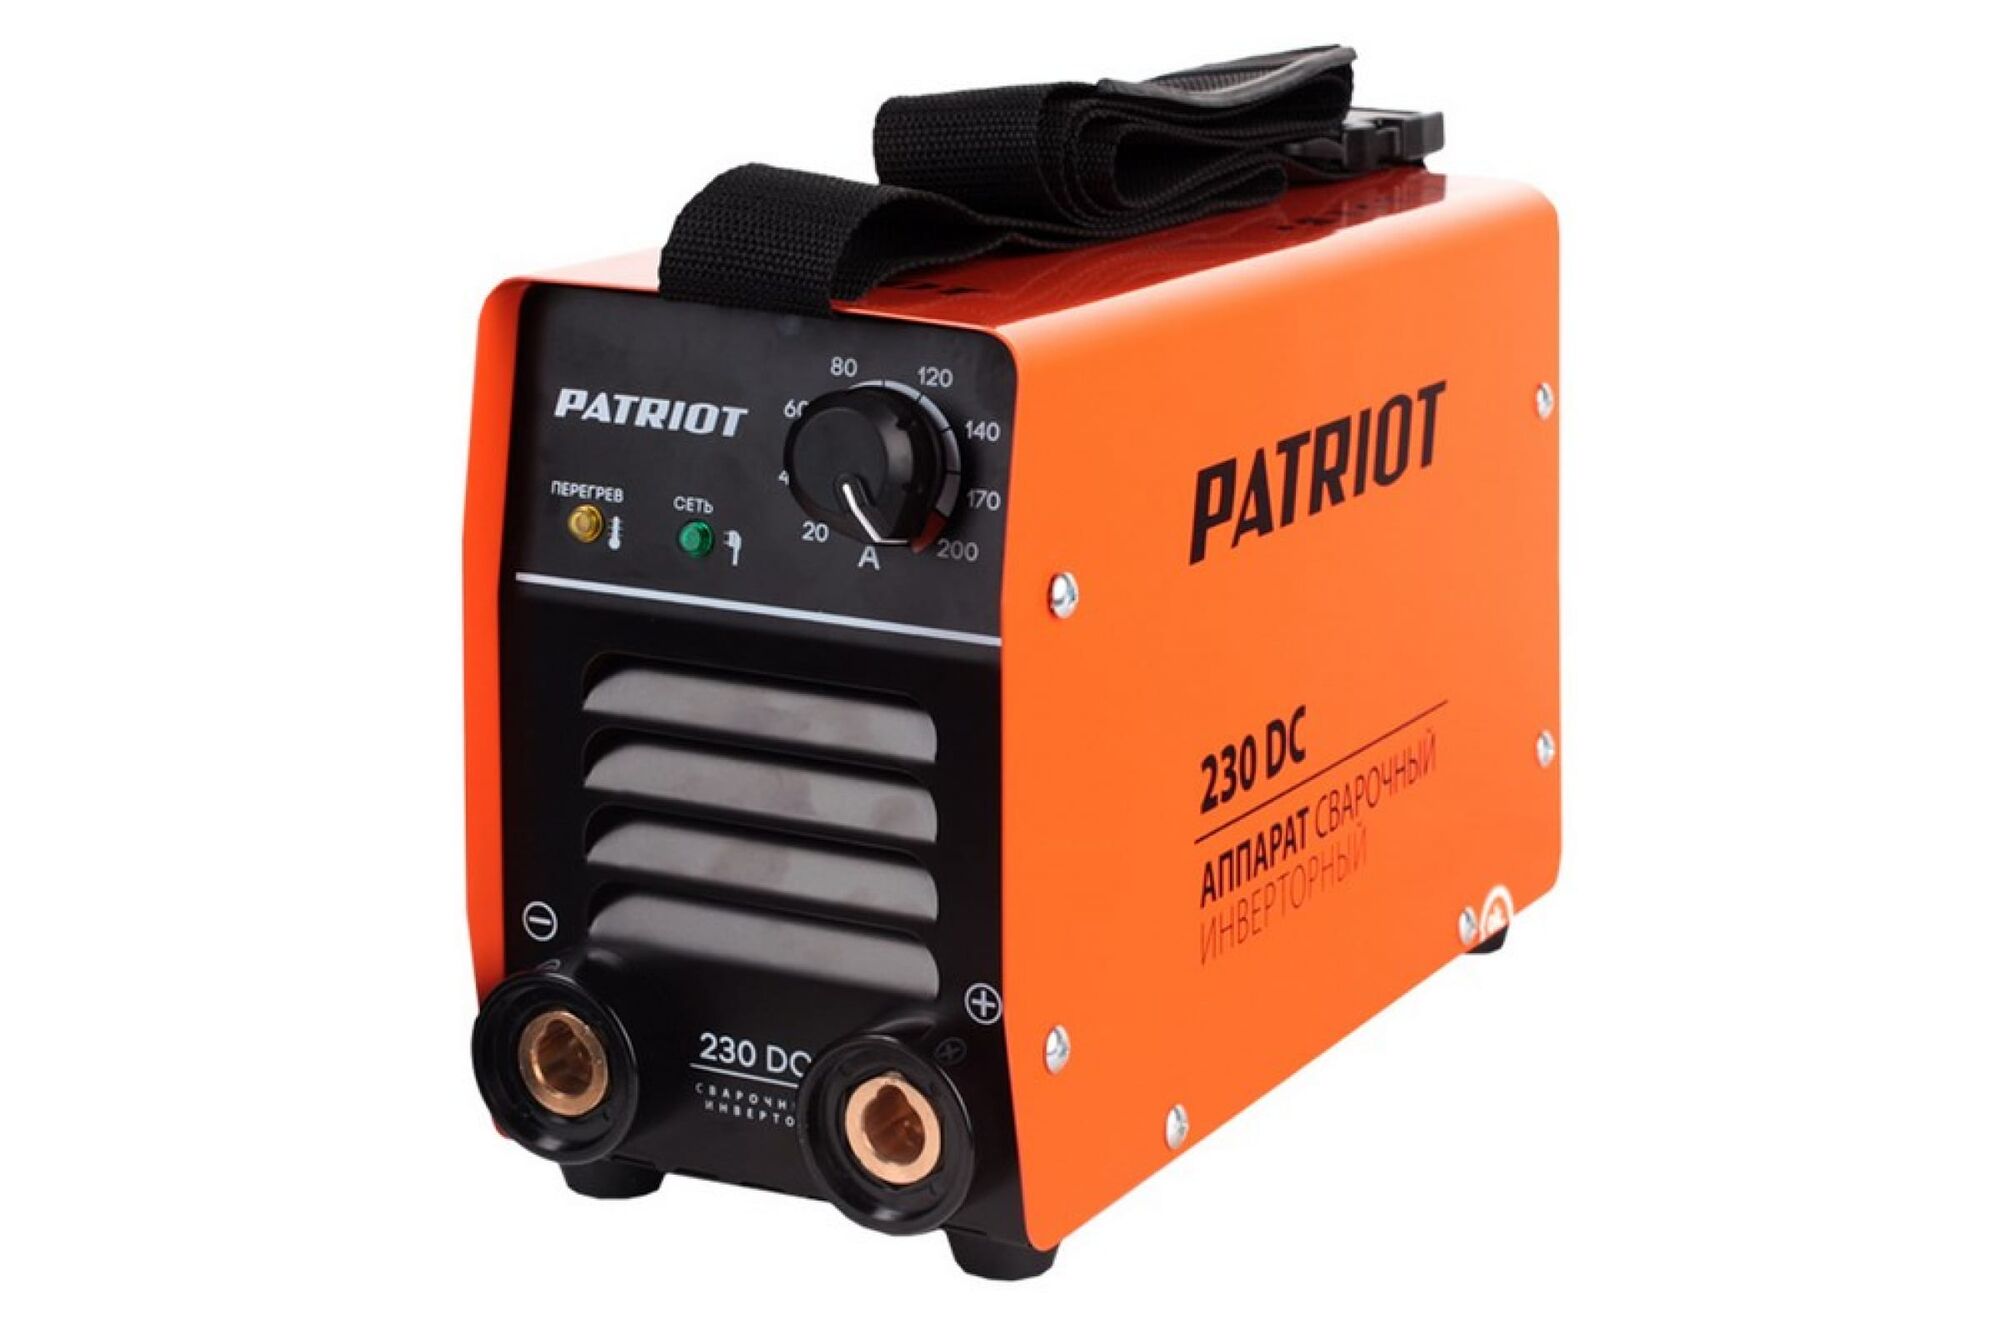 Сварочный аппарат PATRIOT 230DC 605302520 Patriot